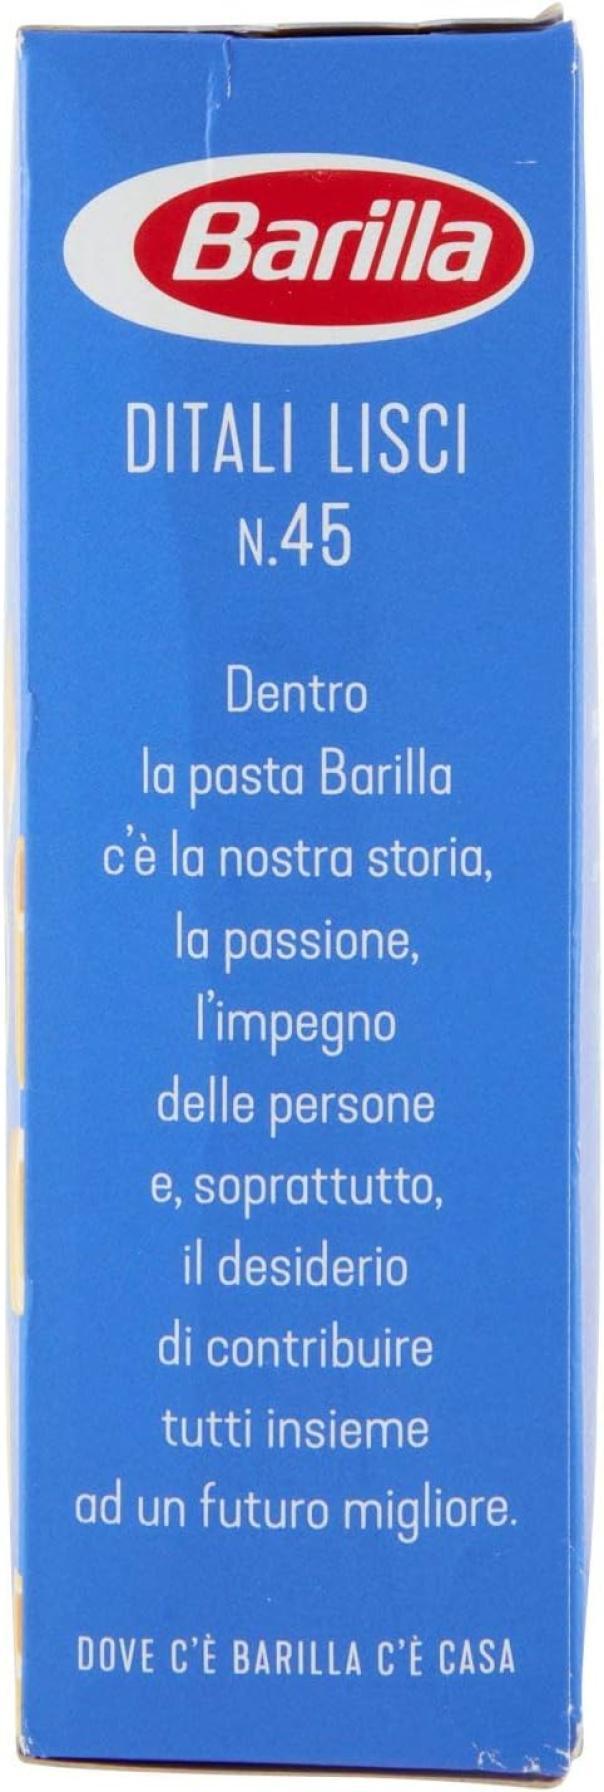 pasta-ditalini-lisci-barilla-500gr-4